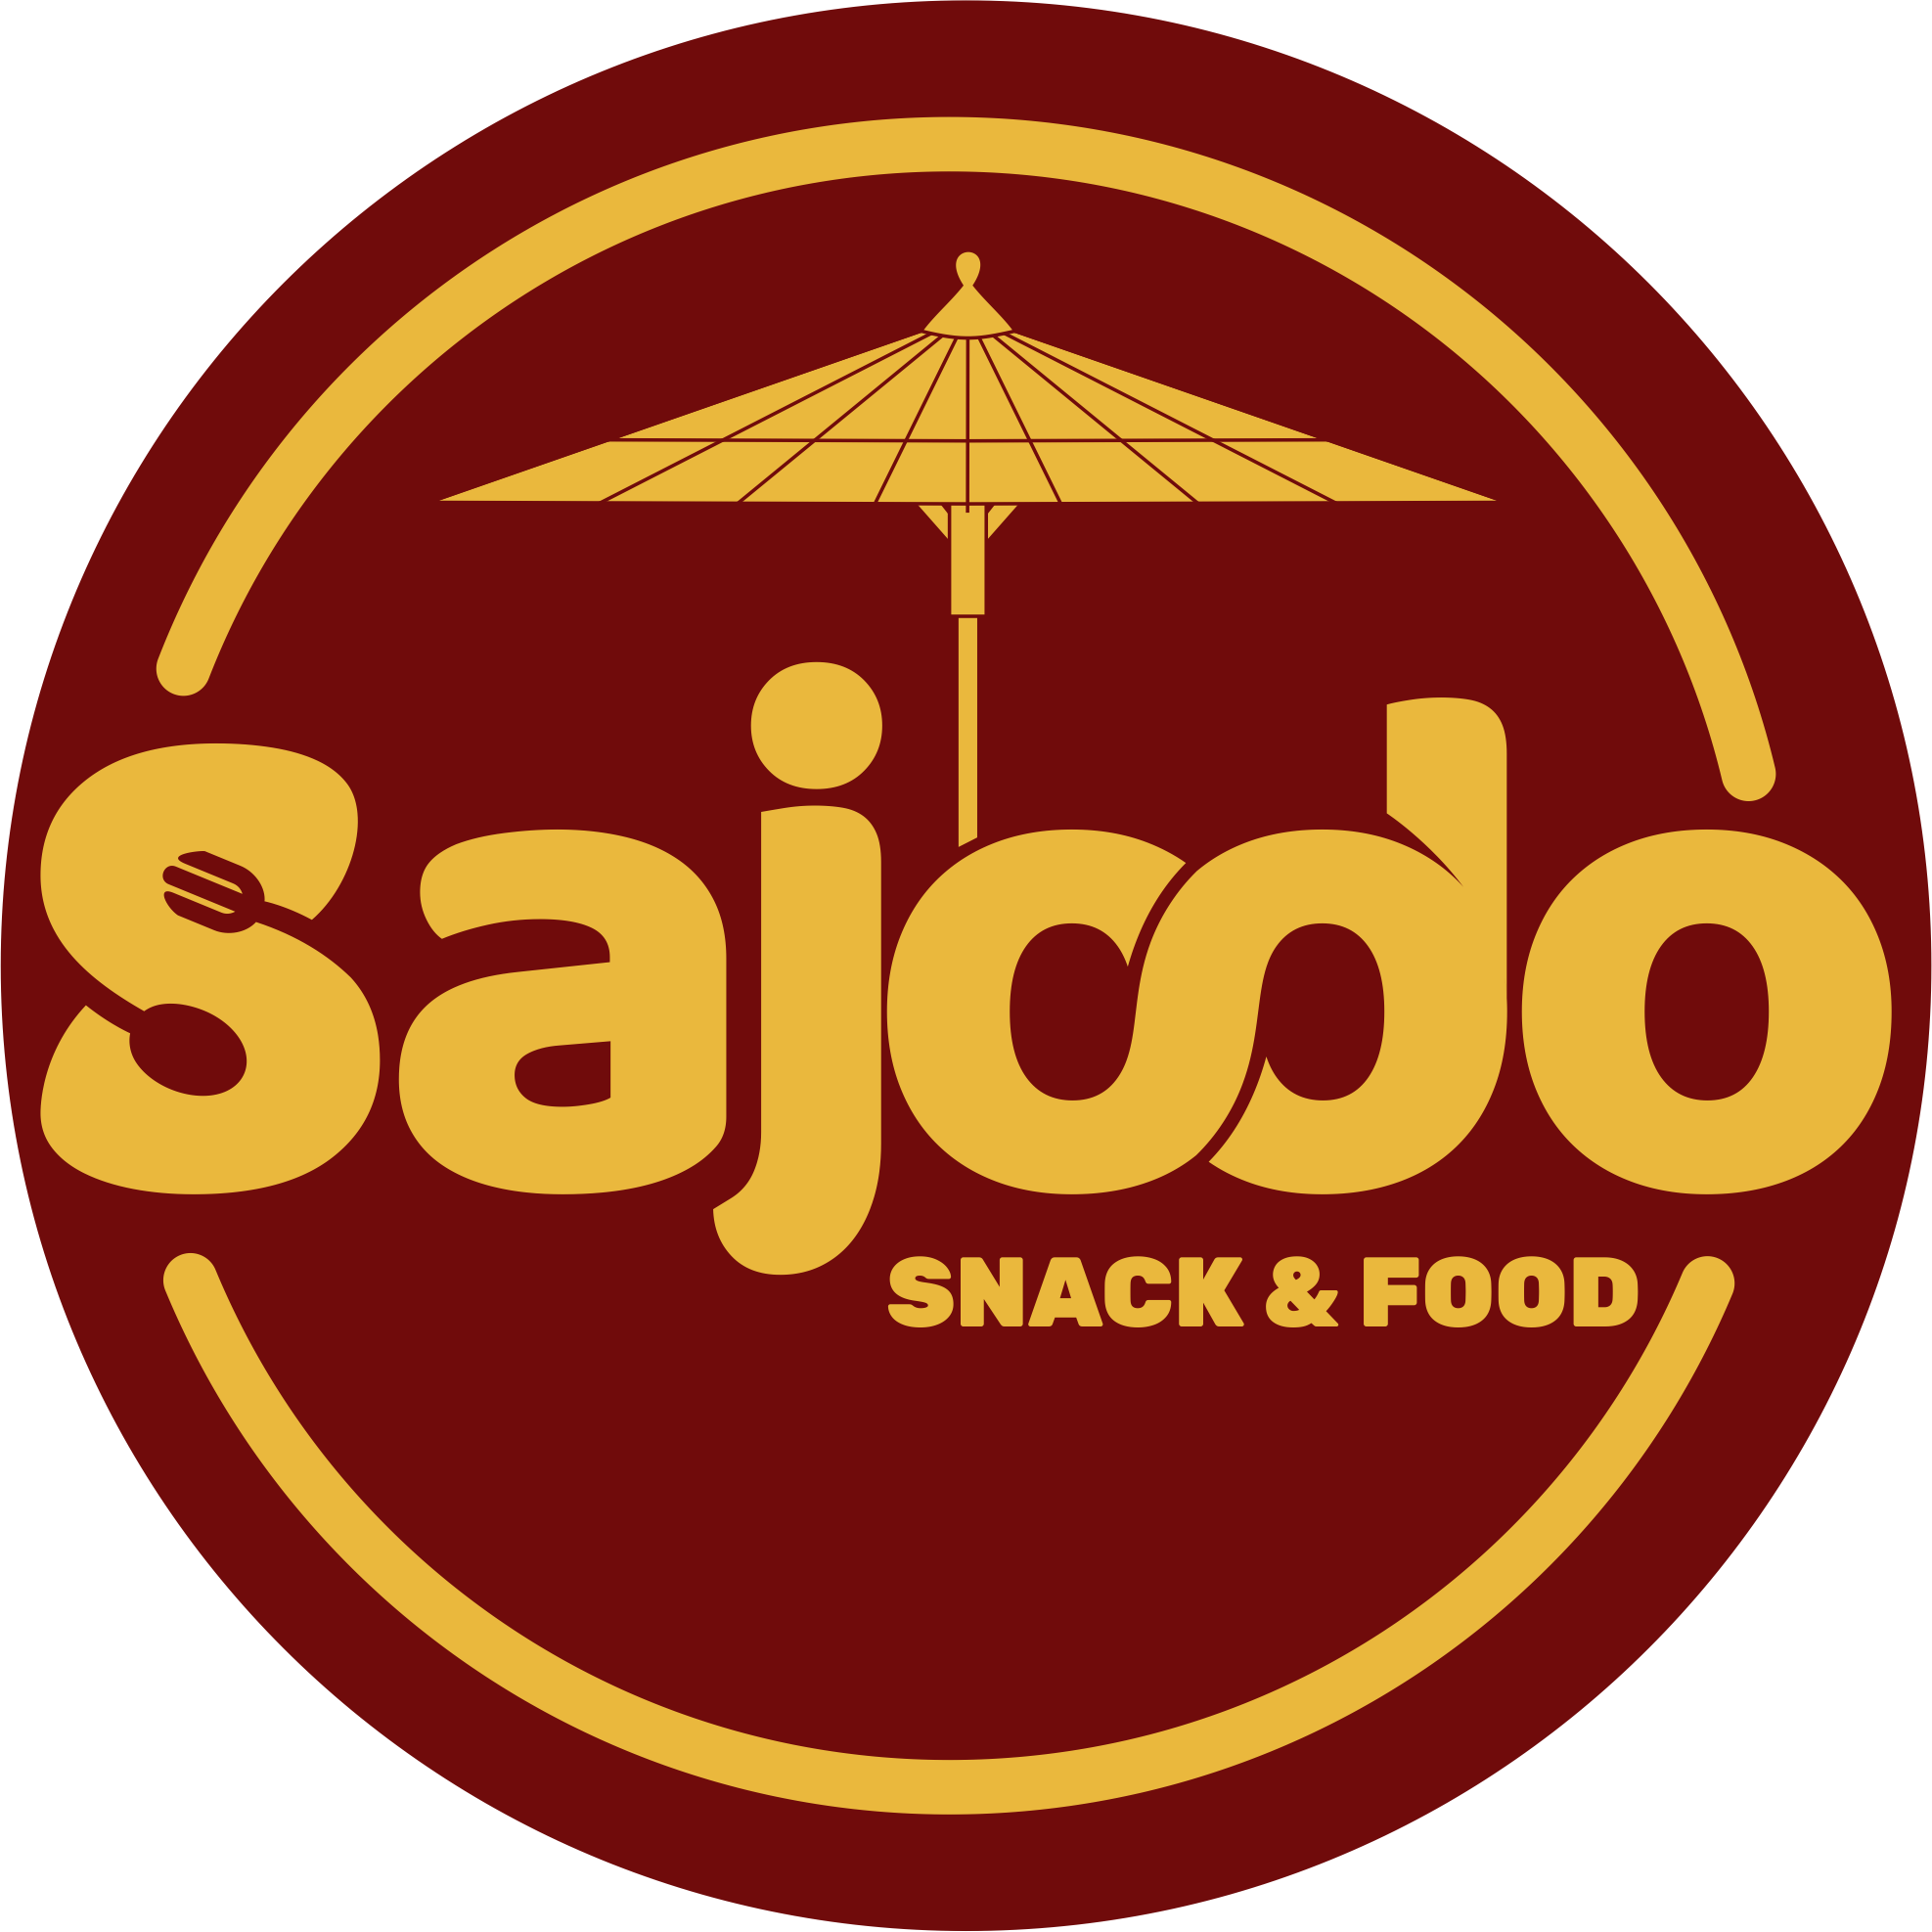 logo sajodo snack